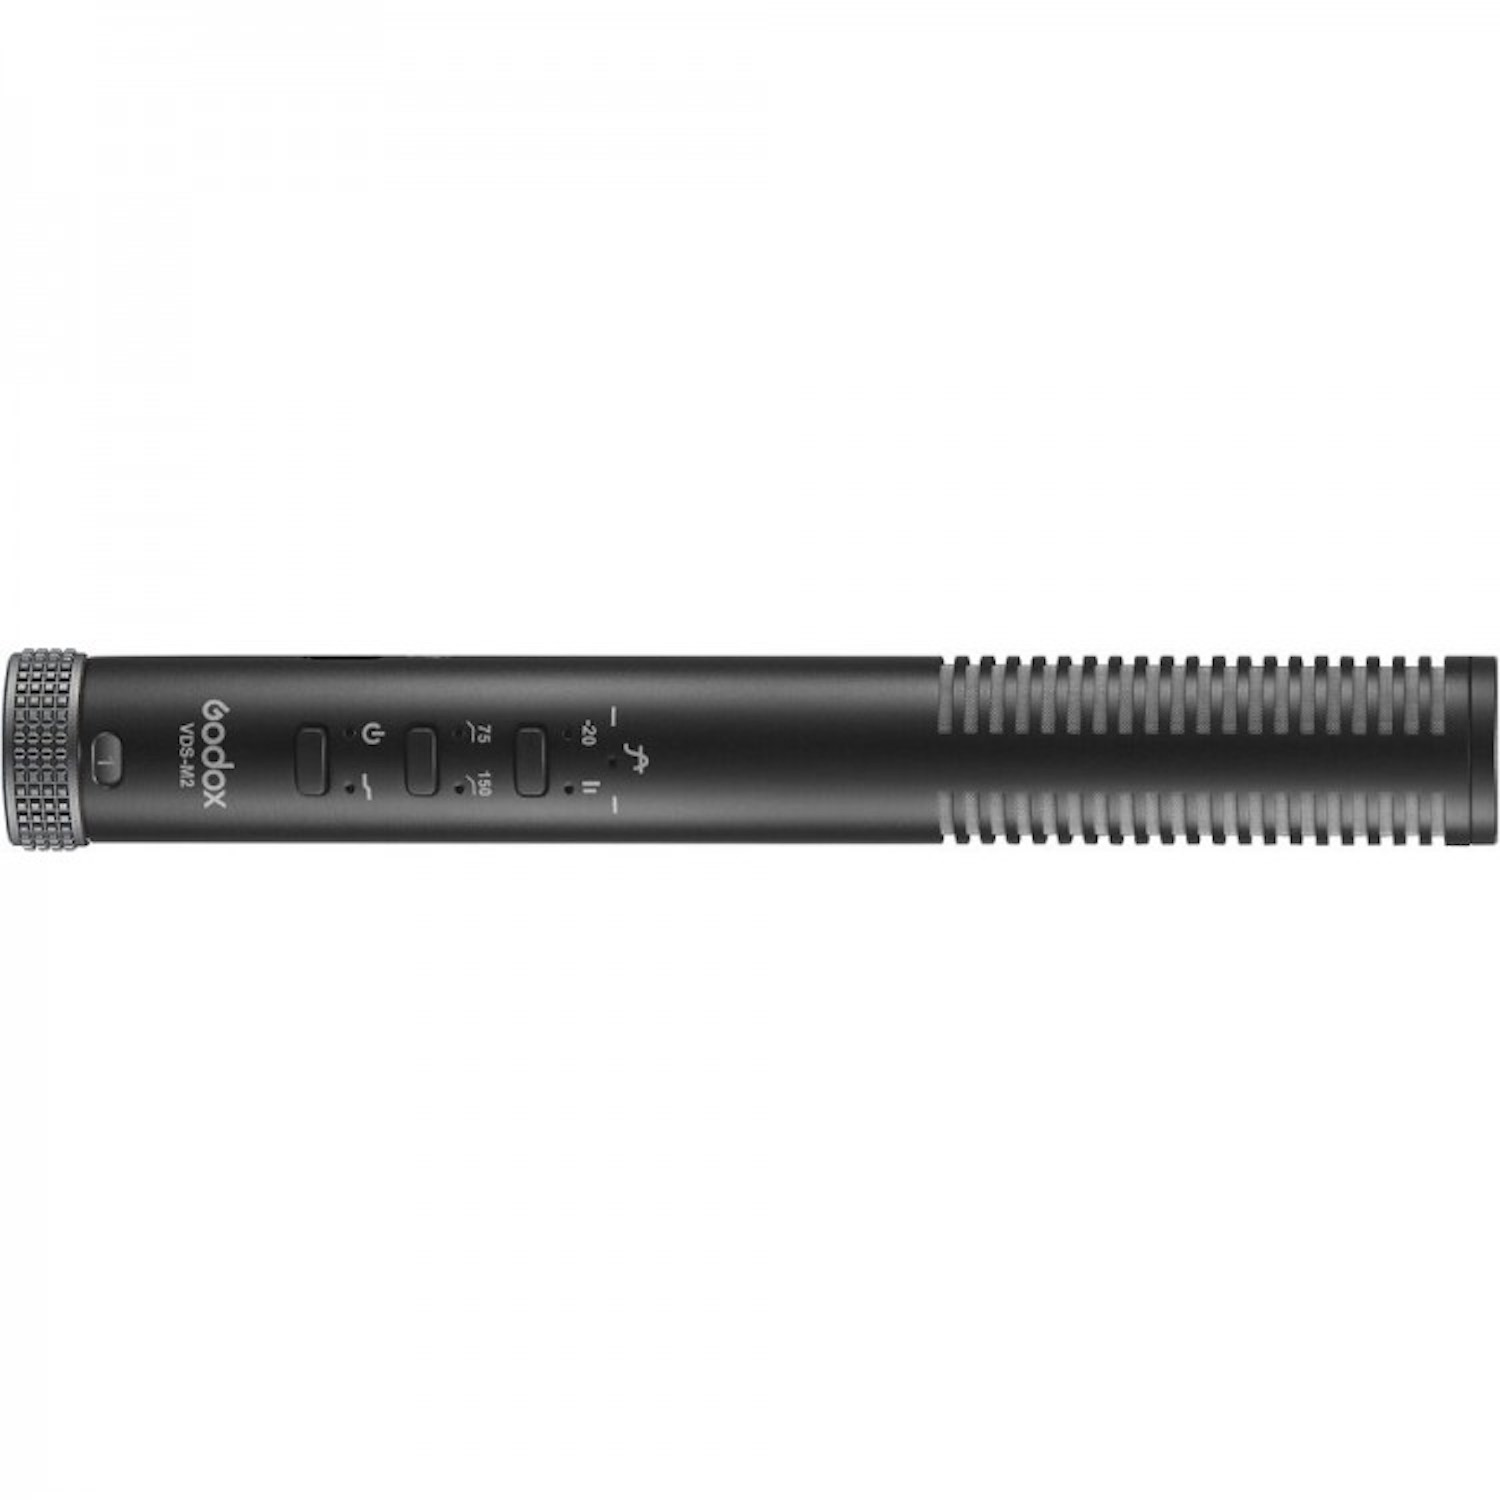 GODOX Shotgun Microphone Mikrofon VDS-M2